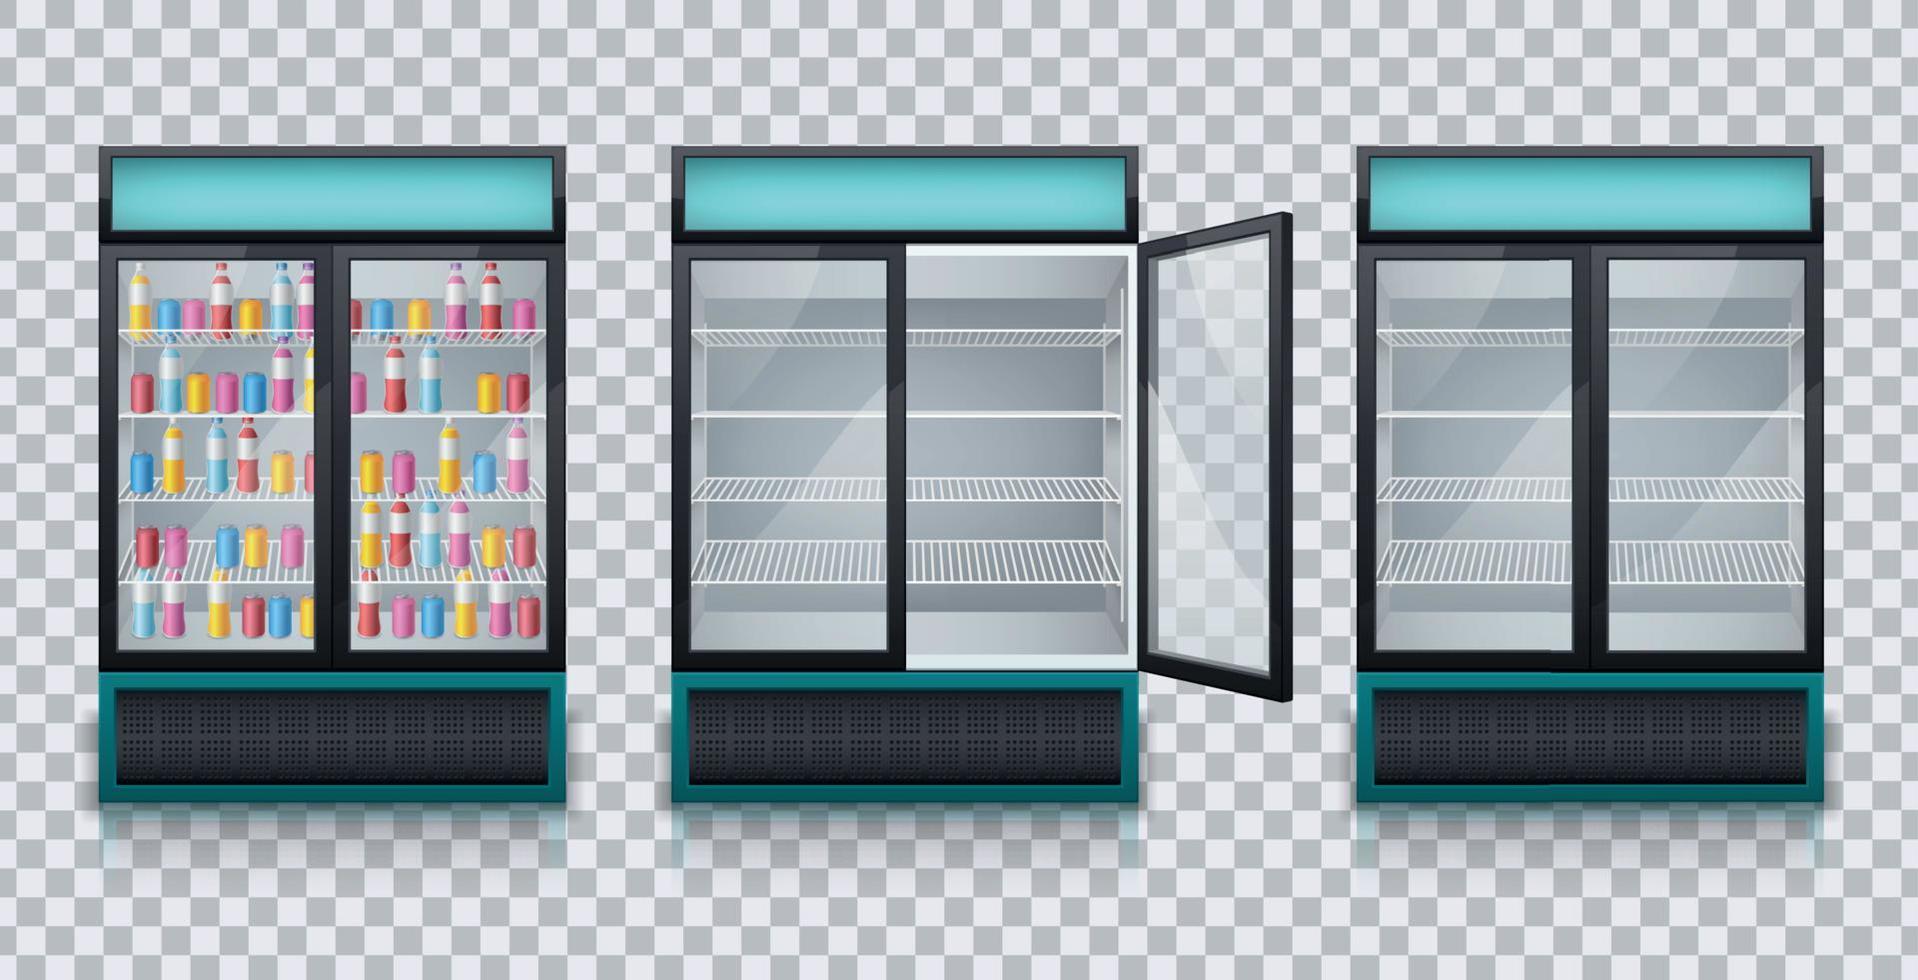 drycker kylskåp realistisk transparent uppsättning vektor